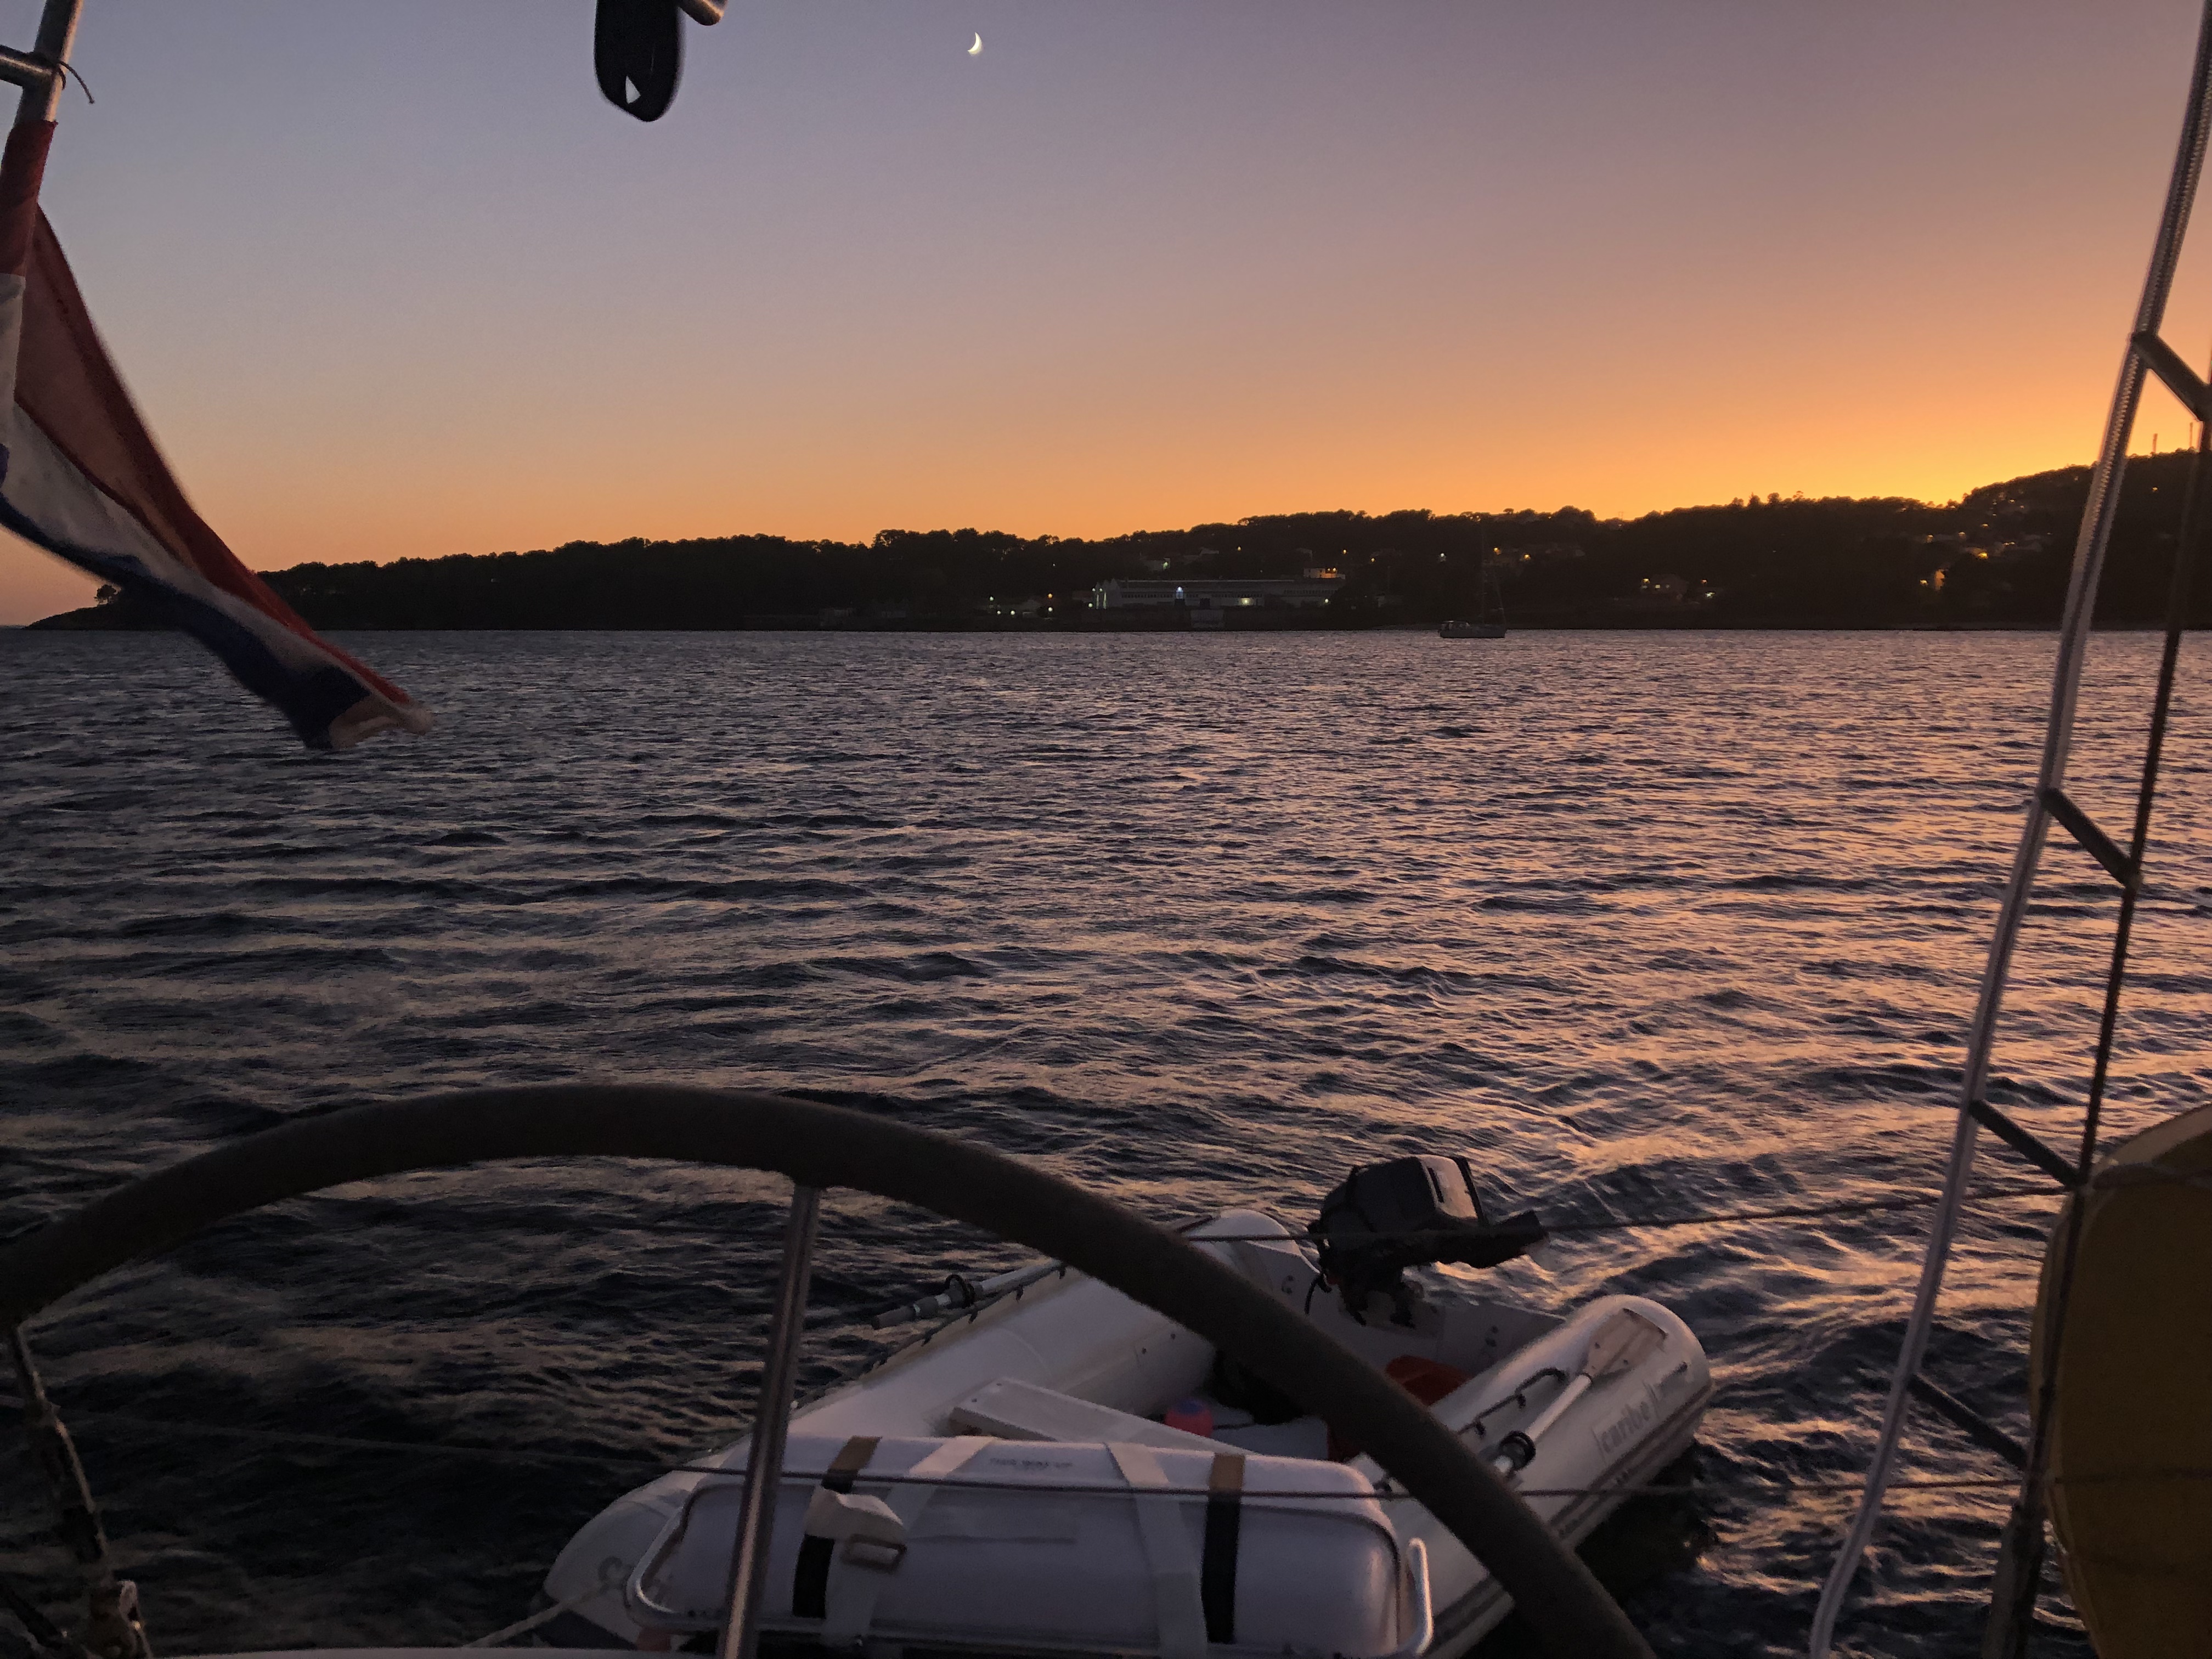 Zeilen varen boot zeilboot spanje coruña ria vertrekken kinderen avontuur spanje Spaanse zee ria ria’swater zout zon